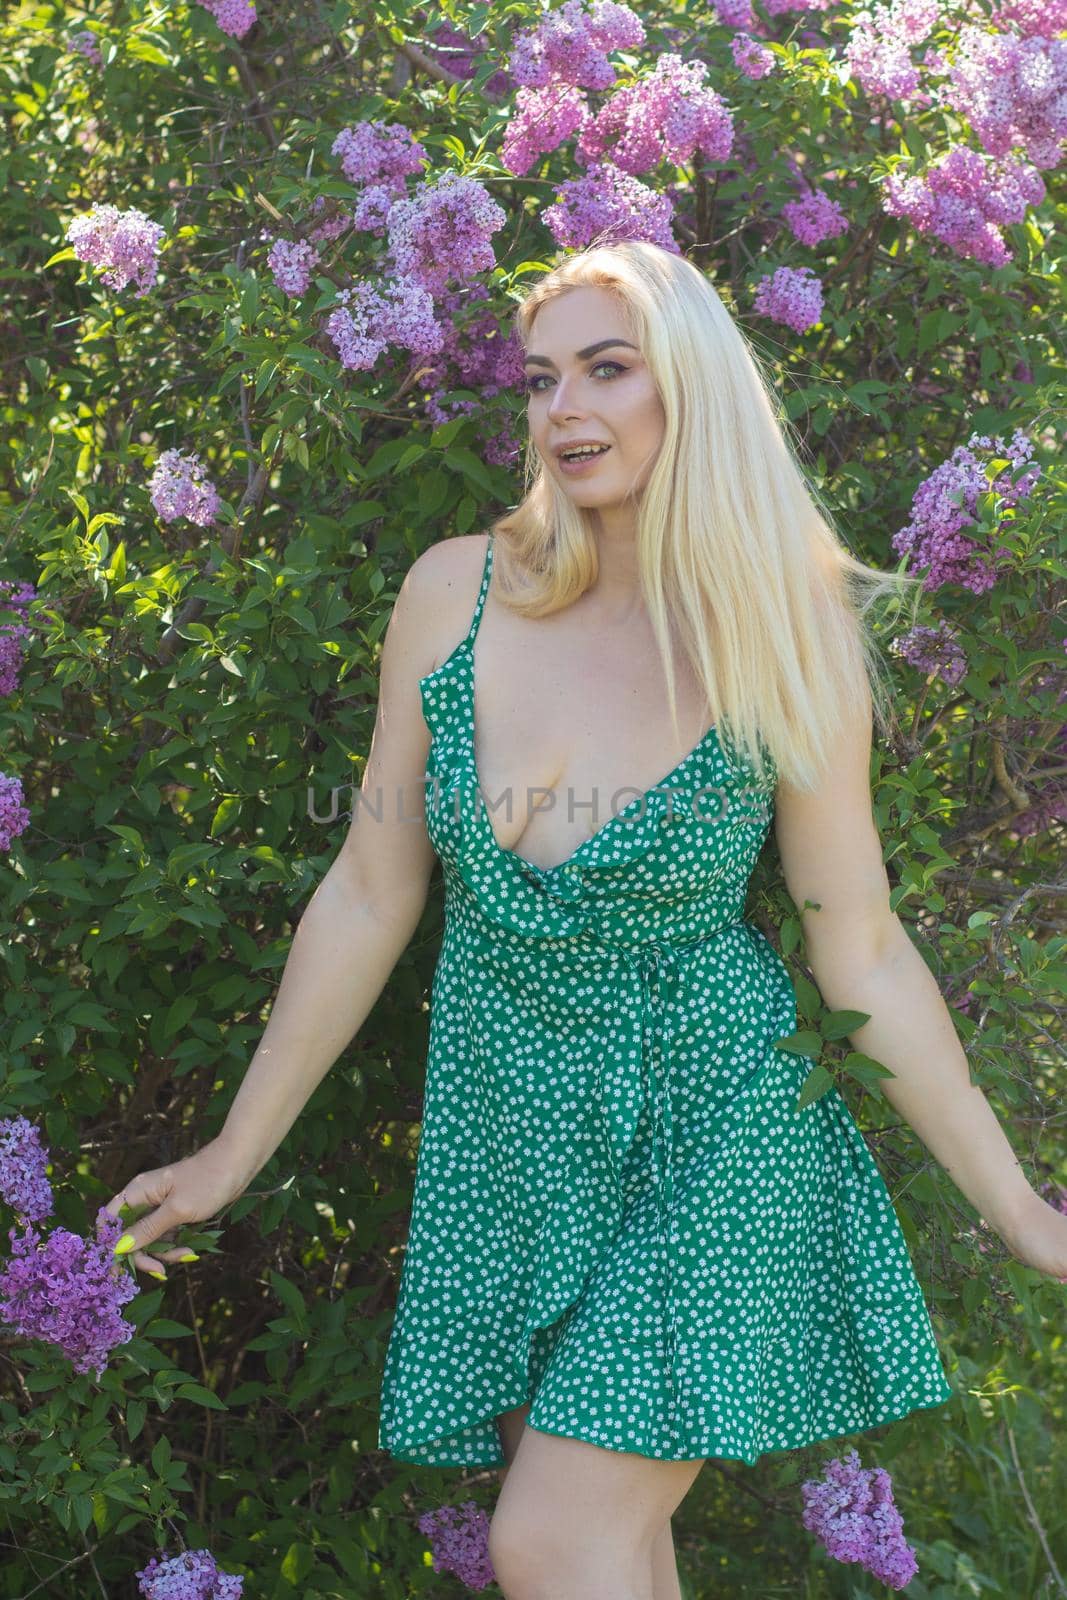 Blonde woman near lilac bush by Bonda